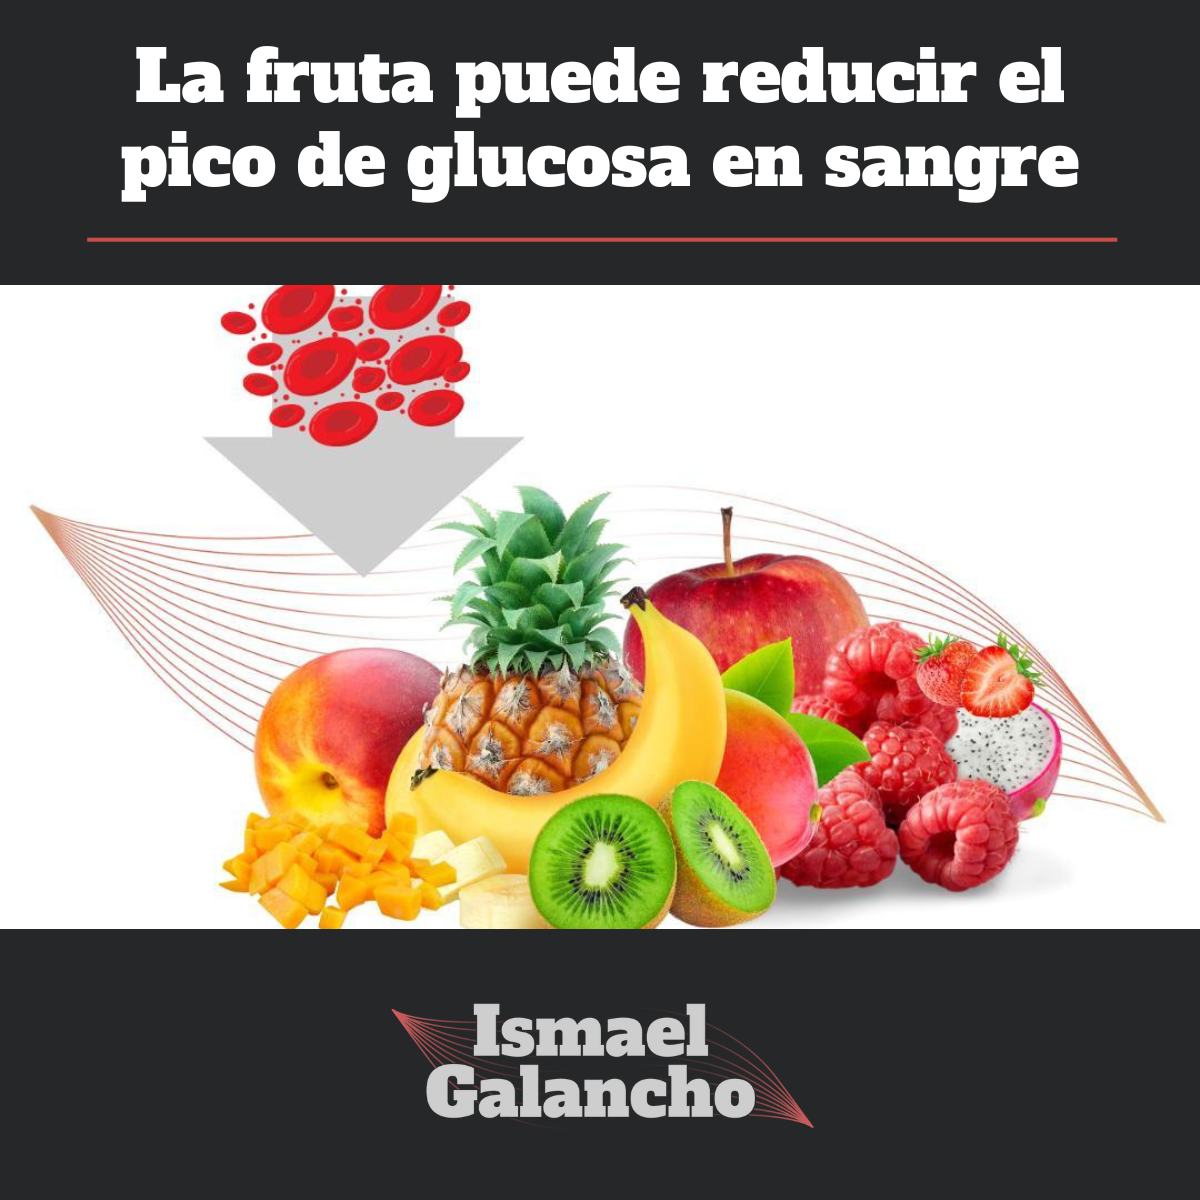 La fruta puede reducir el pico de glucosa en sangre